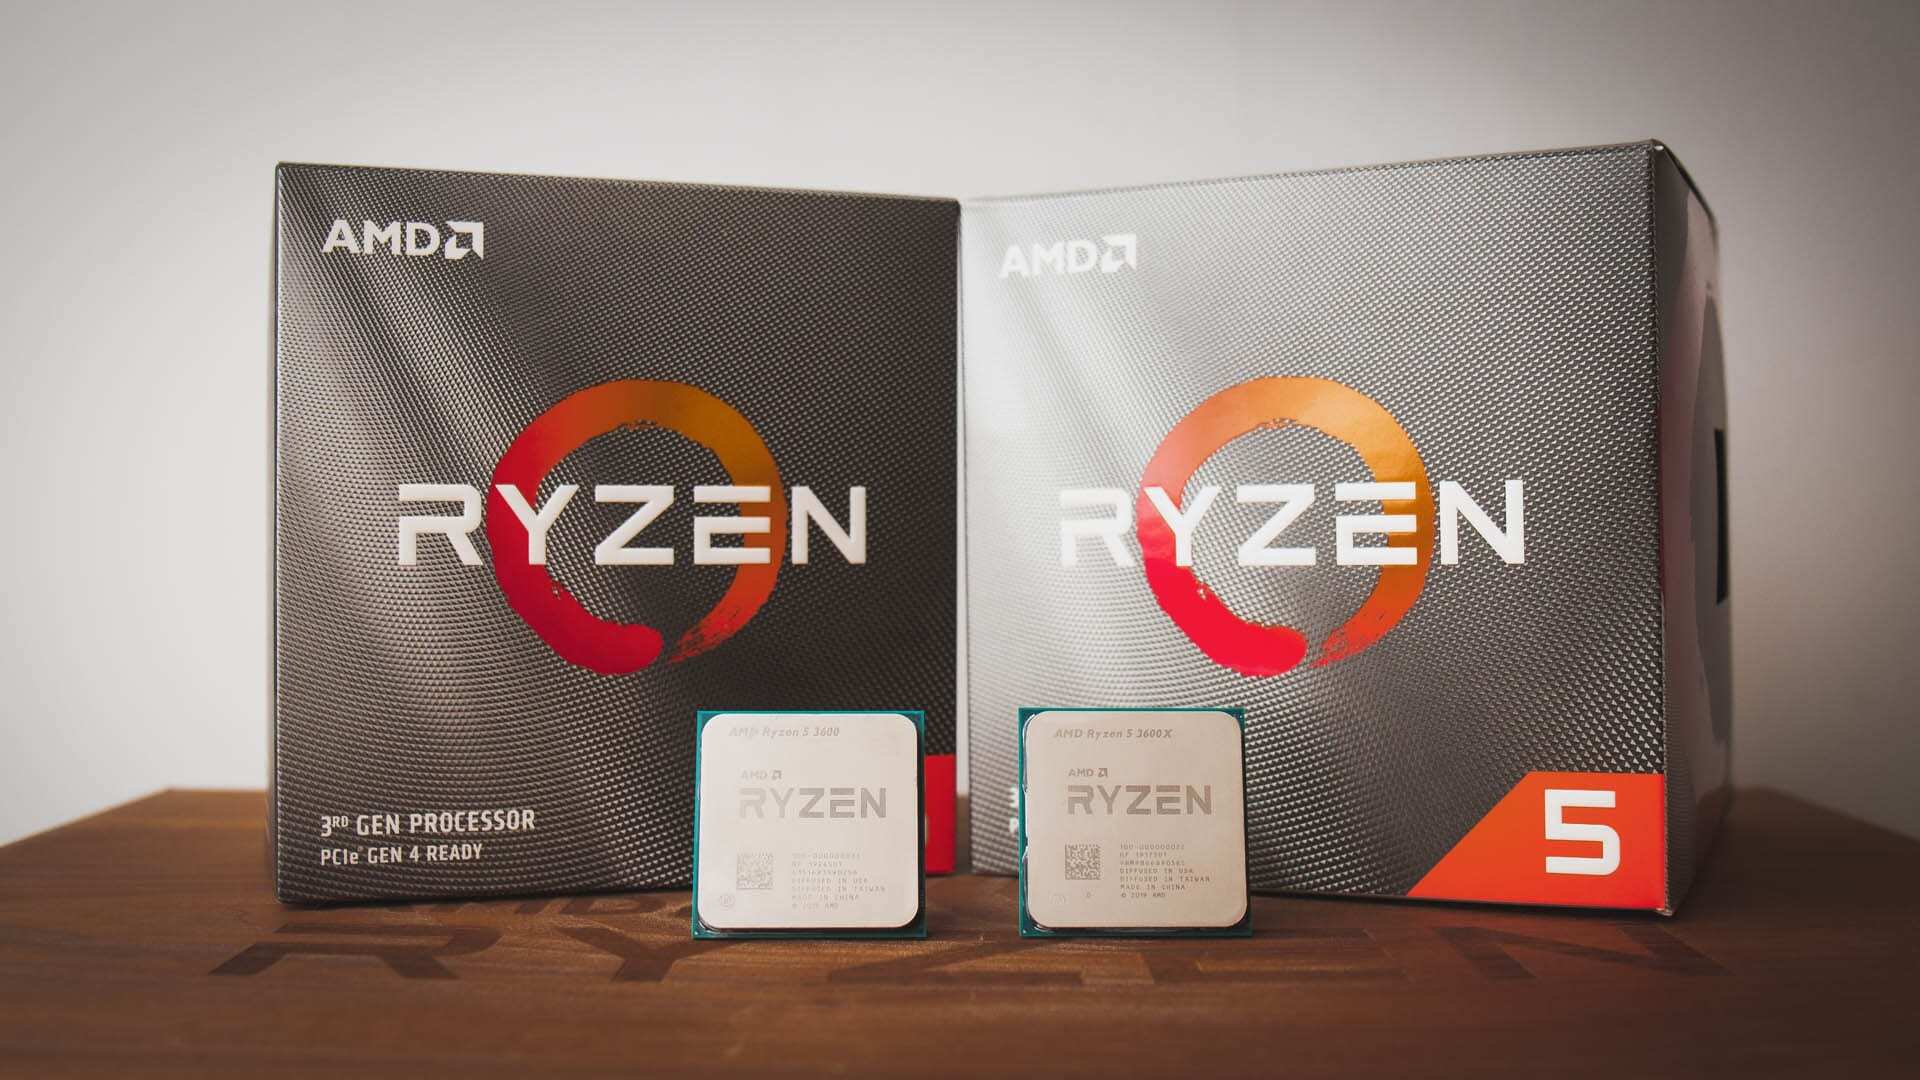 Тест райзен 5. AMD Ryzen 5 3600 Box. Процессор AMD Ryzen r5-3600. Процессор AMD Ryzen 5 3600x OEM. AMD Ryzen 5 3600 OEM.